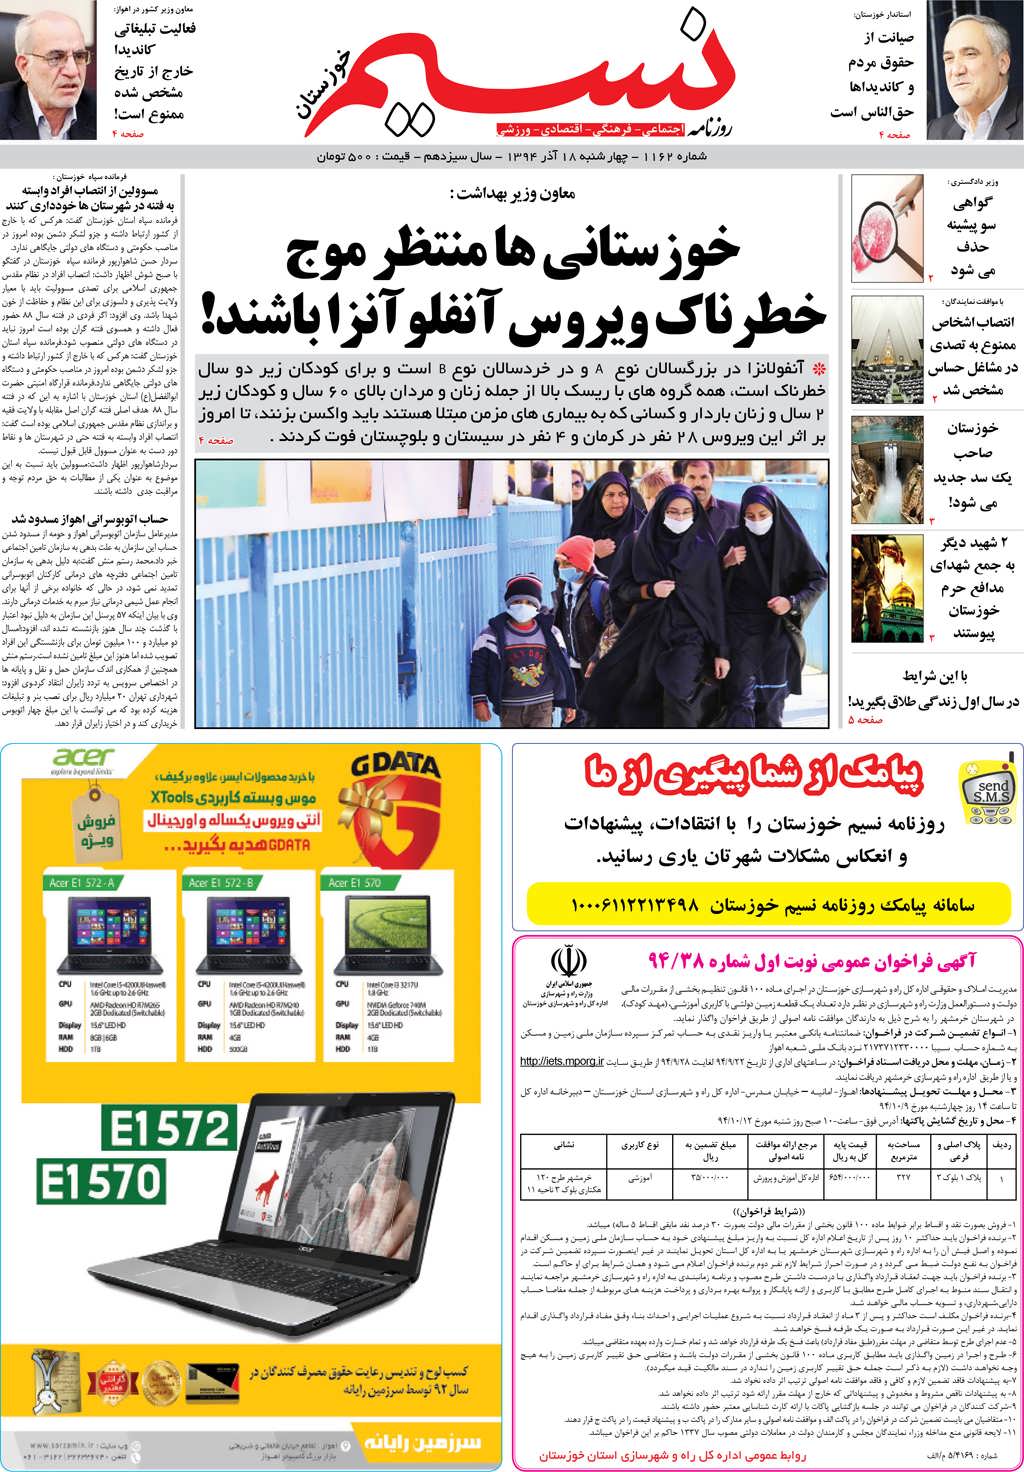 صفحه اصلی روزنامه نسیم شماره 1162